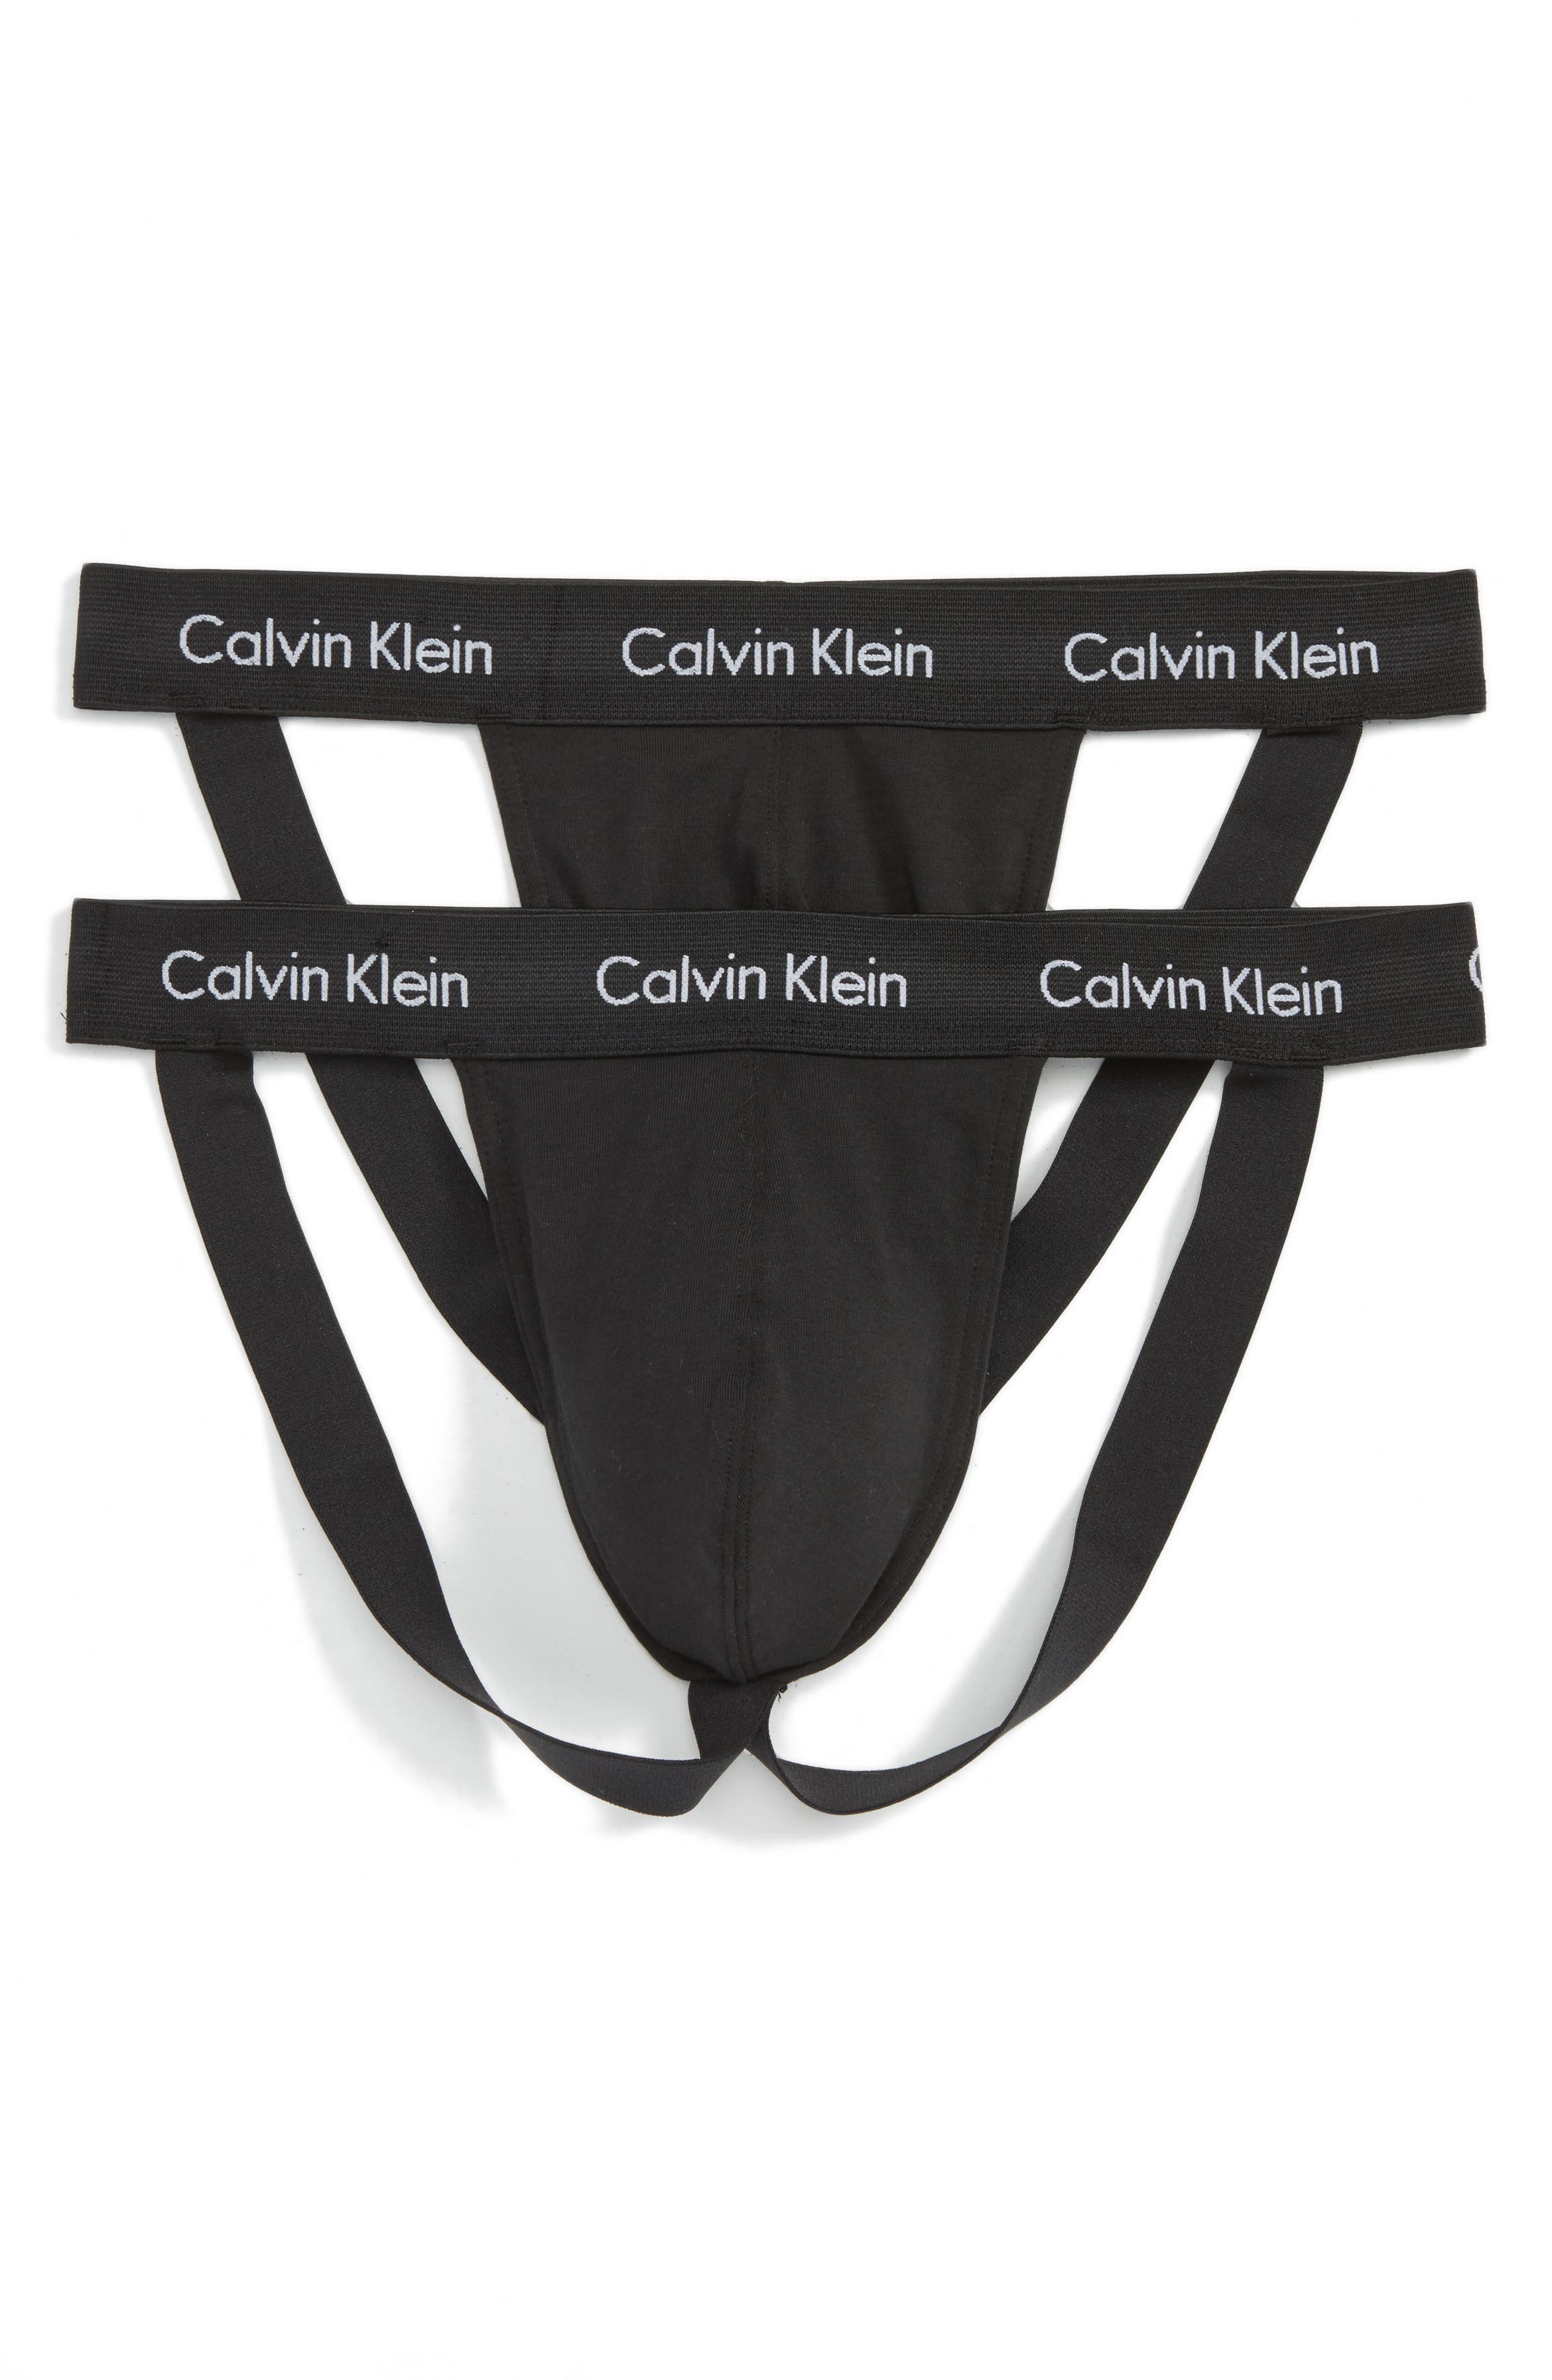 Calvin Klein 2-Pack Stretch Cotton Jock Strap | Nordstrom